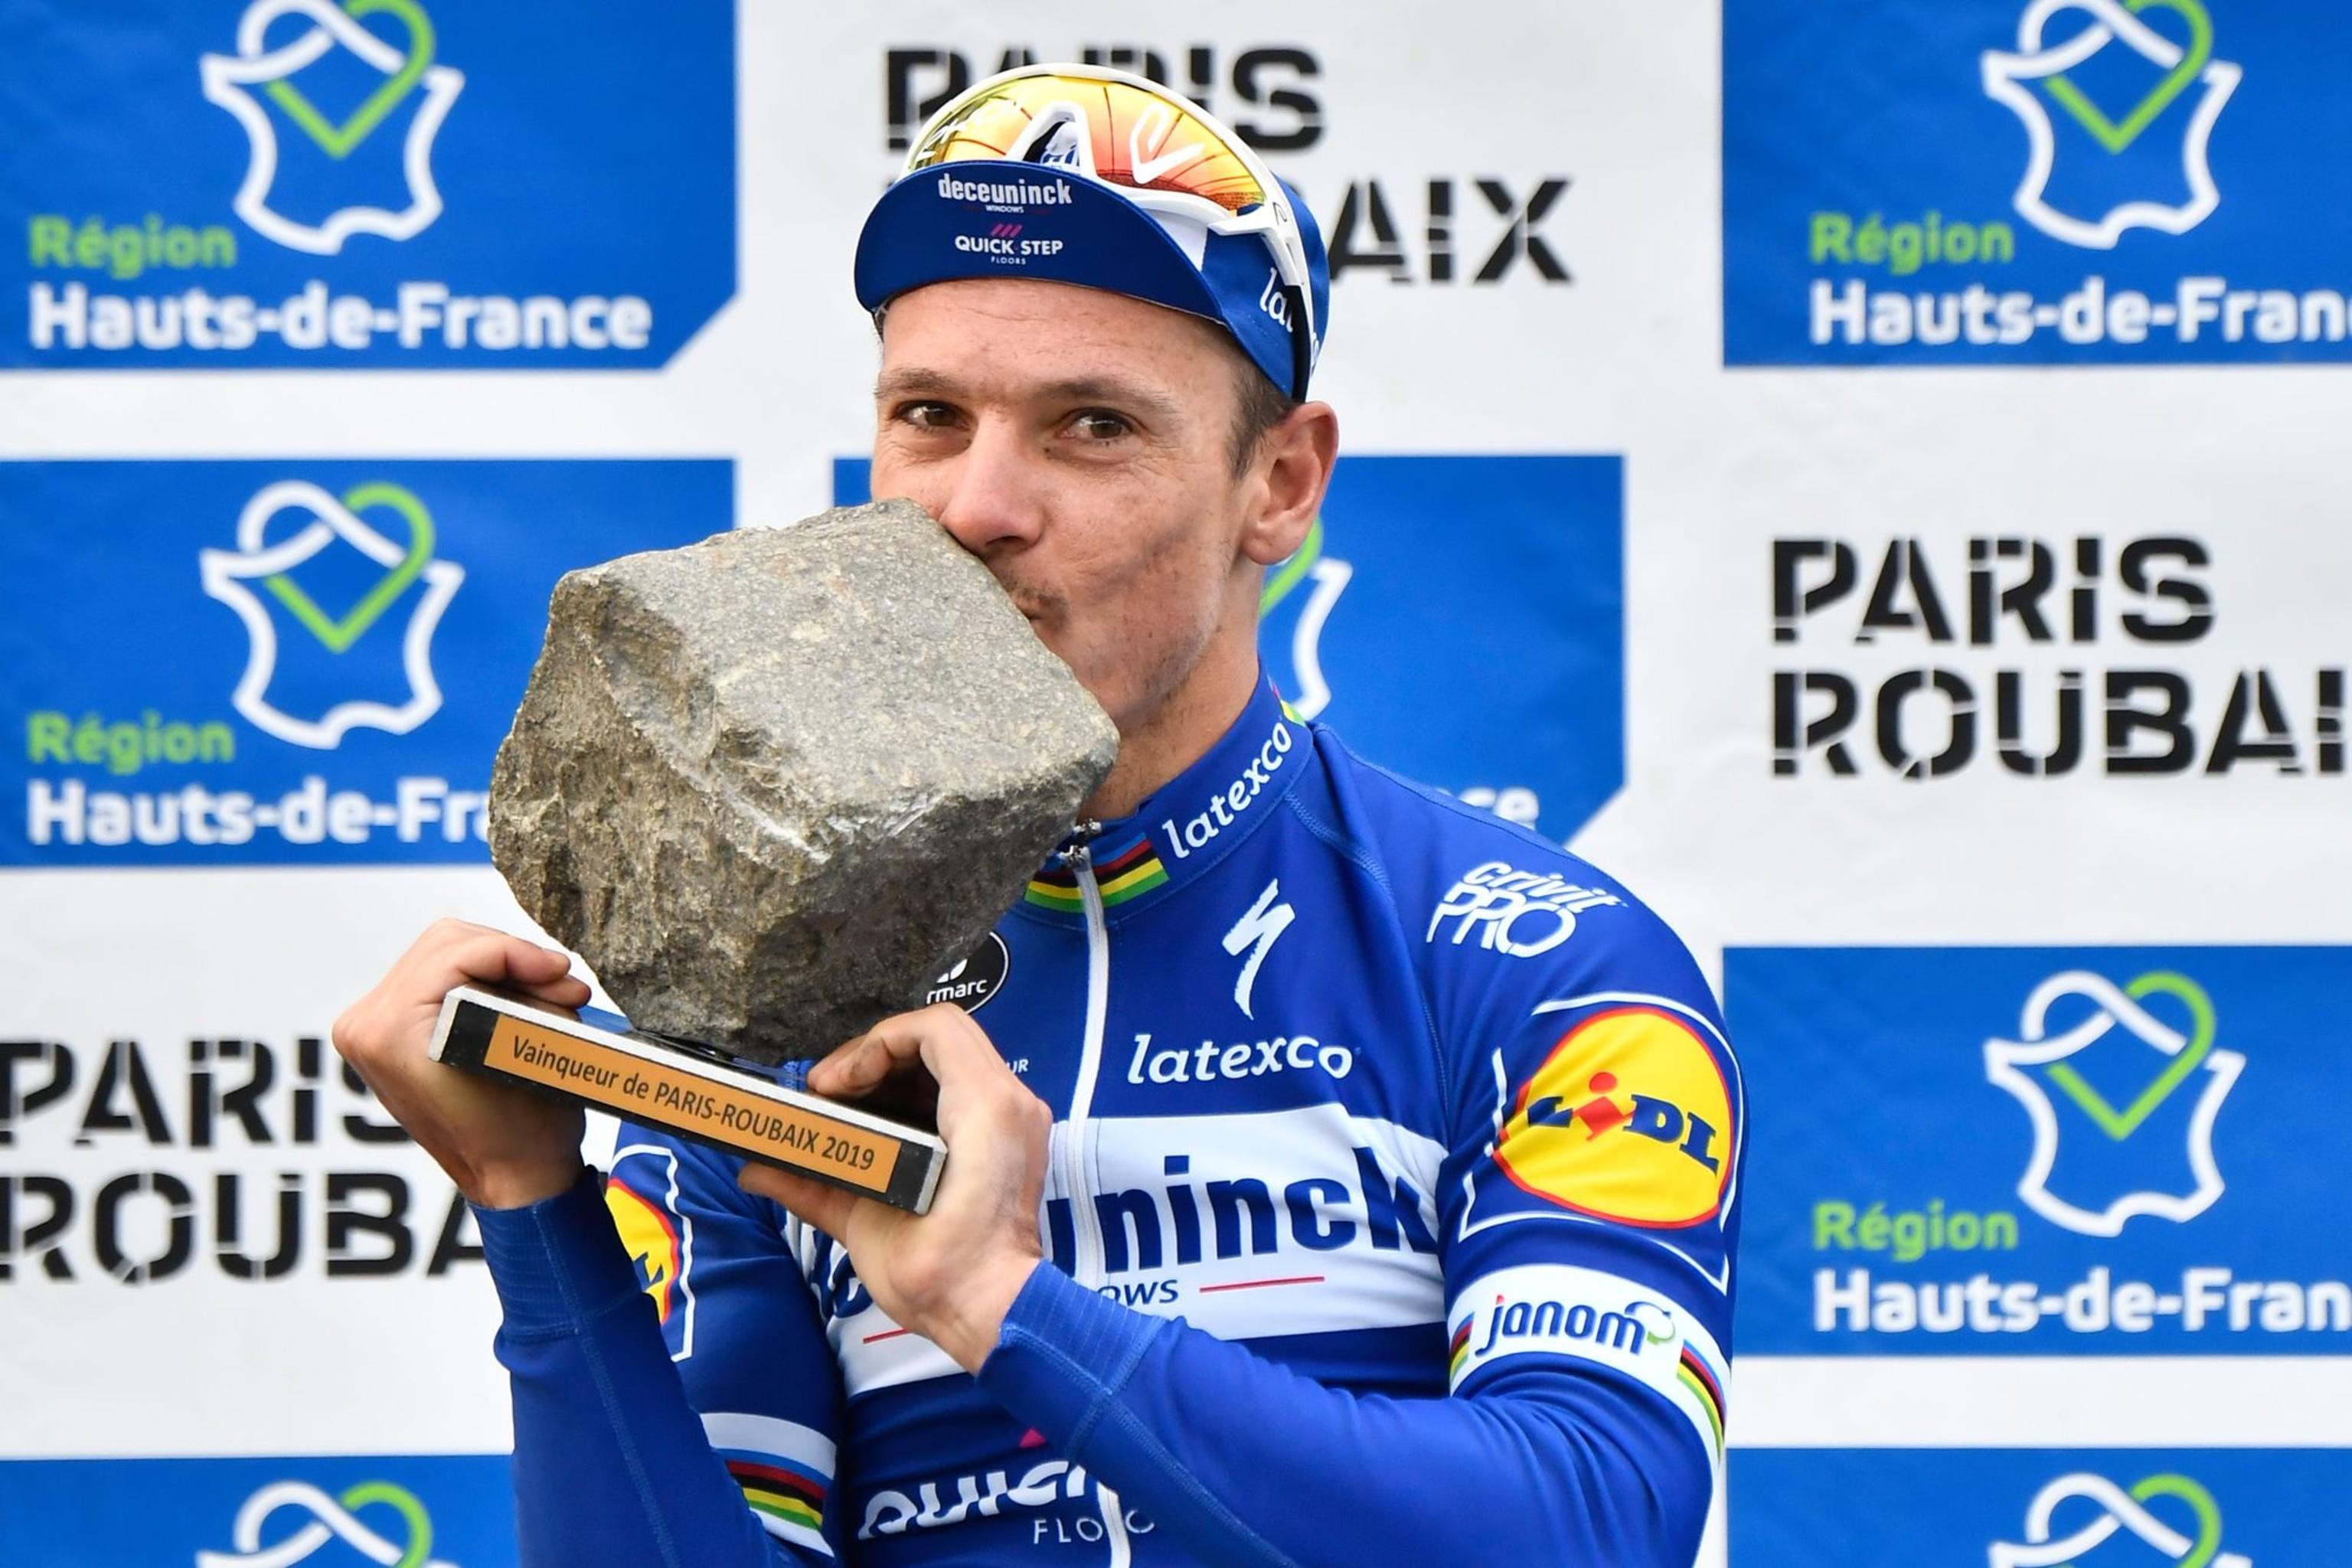  Voor de 36-jarige Gilbert was het nog maar de derde deelname aan Parijs-Roubaix en dat leverde meteen een zege op, zijn tweede van het seizoen en ook de eerste Belgische klassieke zege dit voorjaar. 